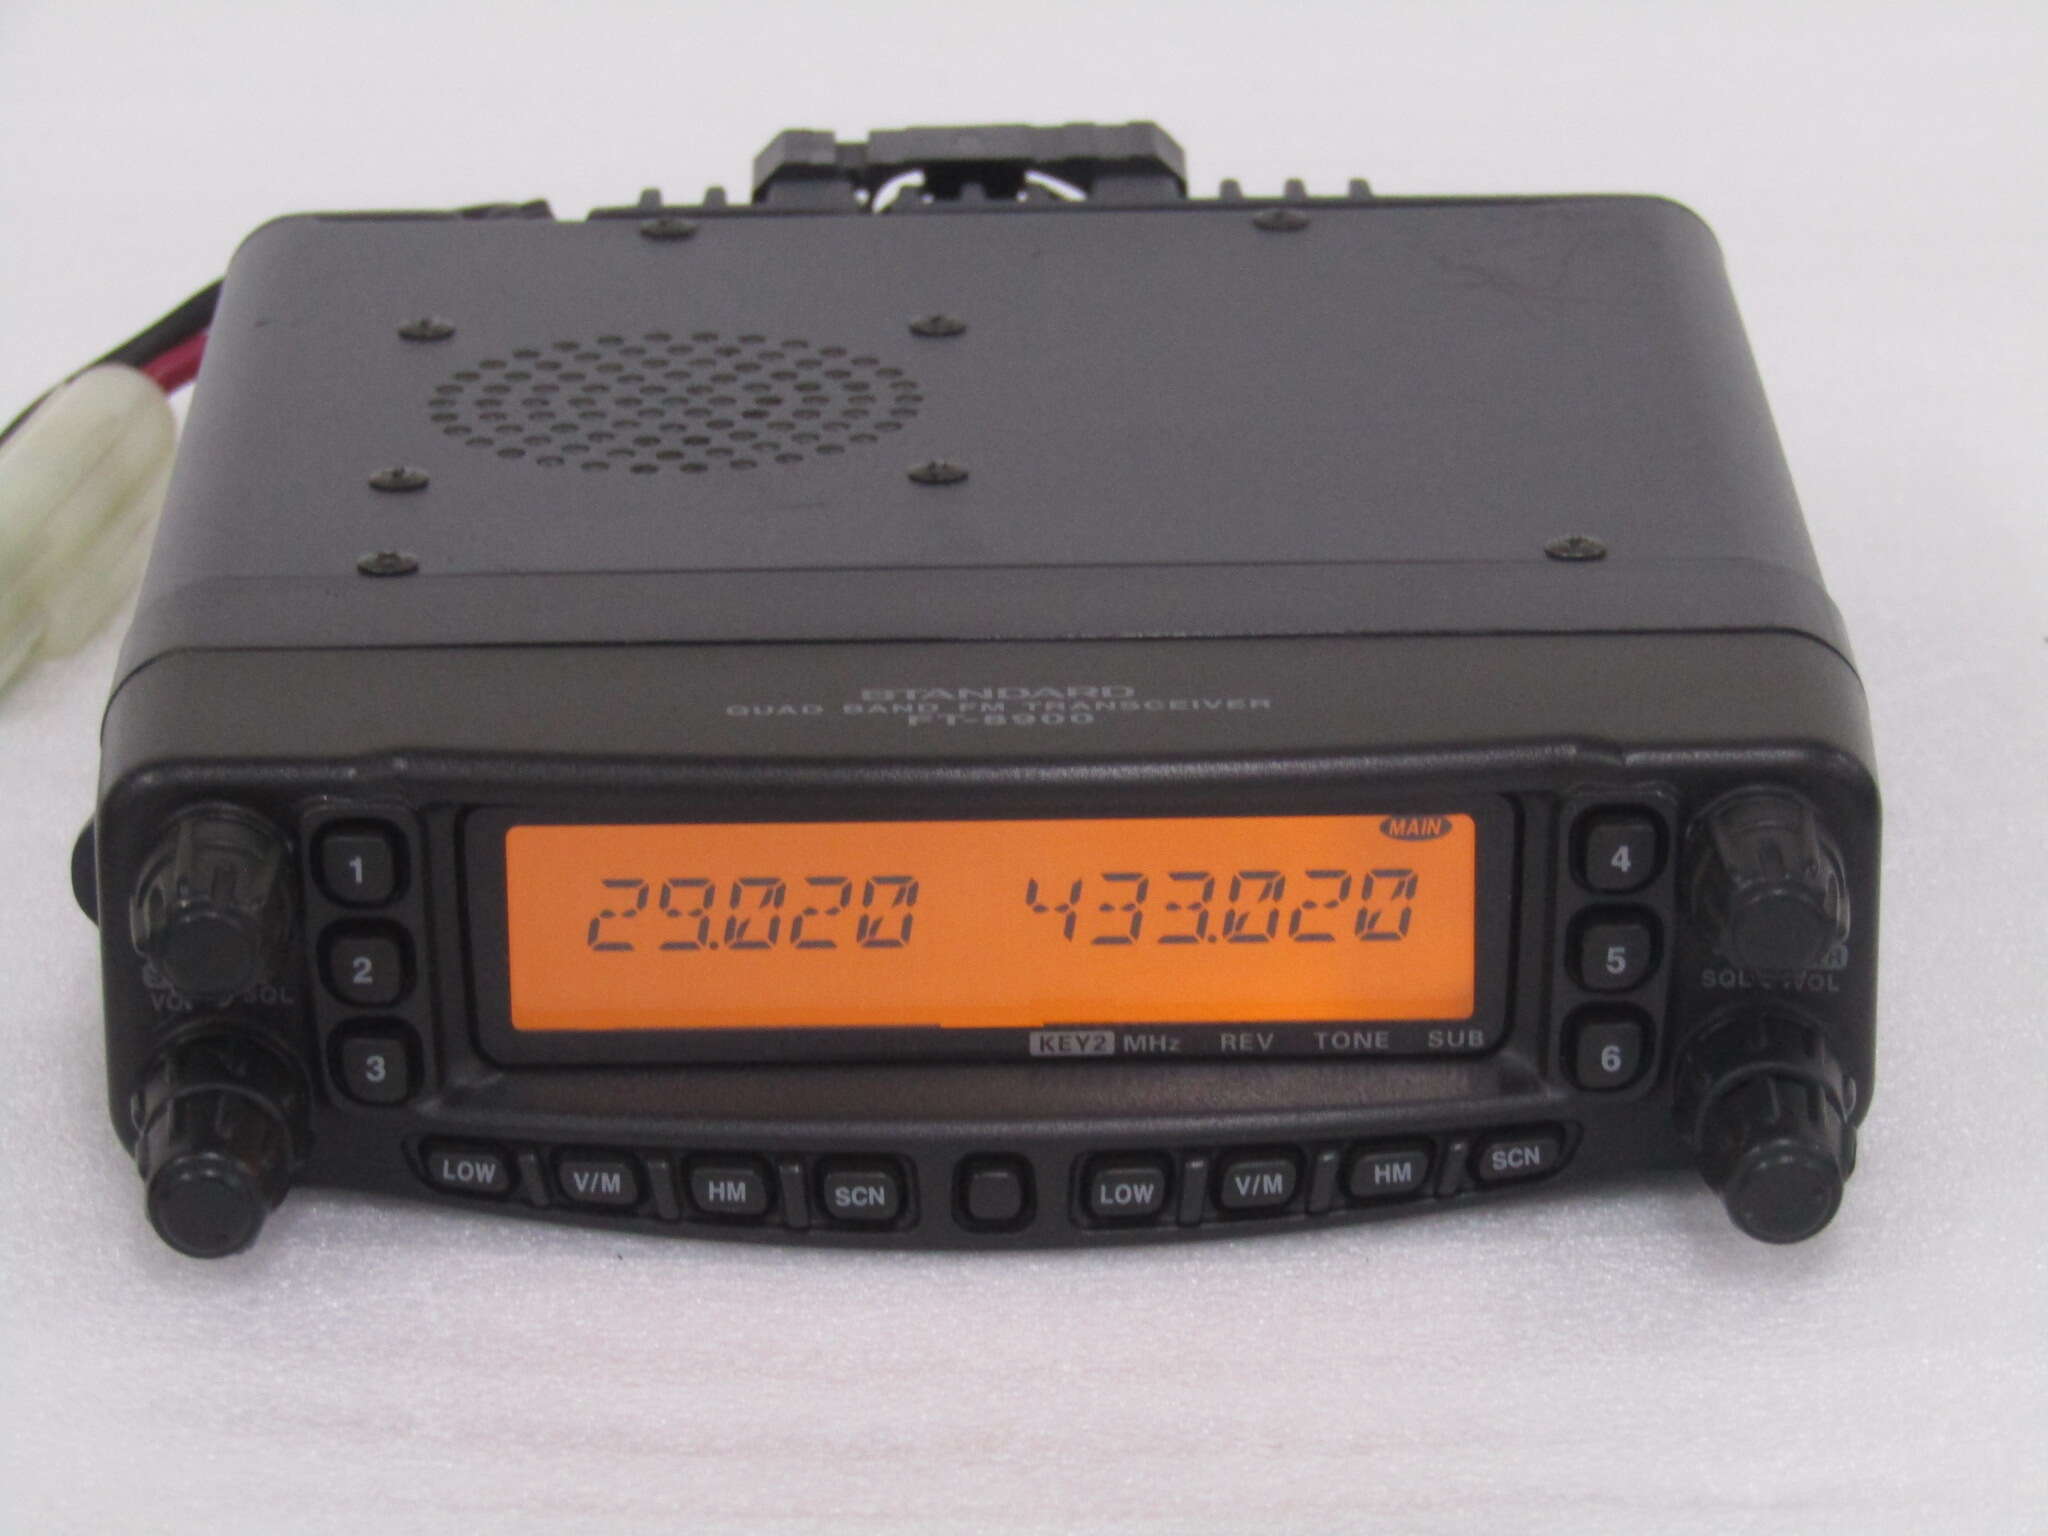 ホビー STANDARD/YAESU FT-8900 20W 他アマチュア無線セットの通販 by